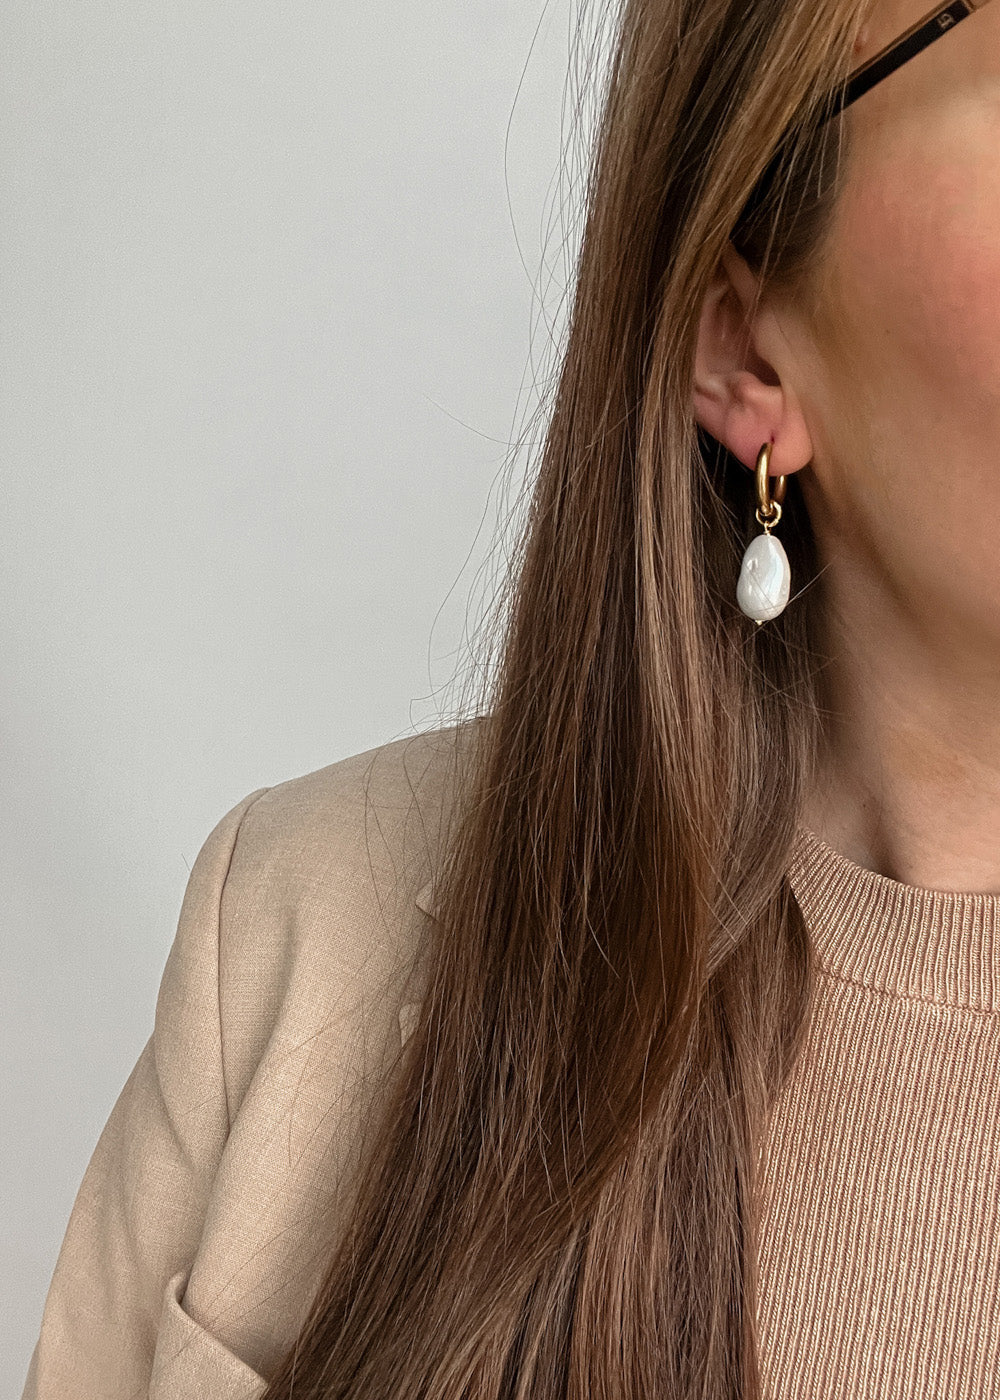 Hoop Earrings | Sea shell pearls